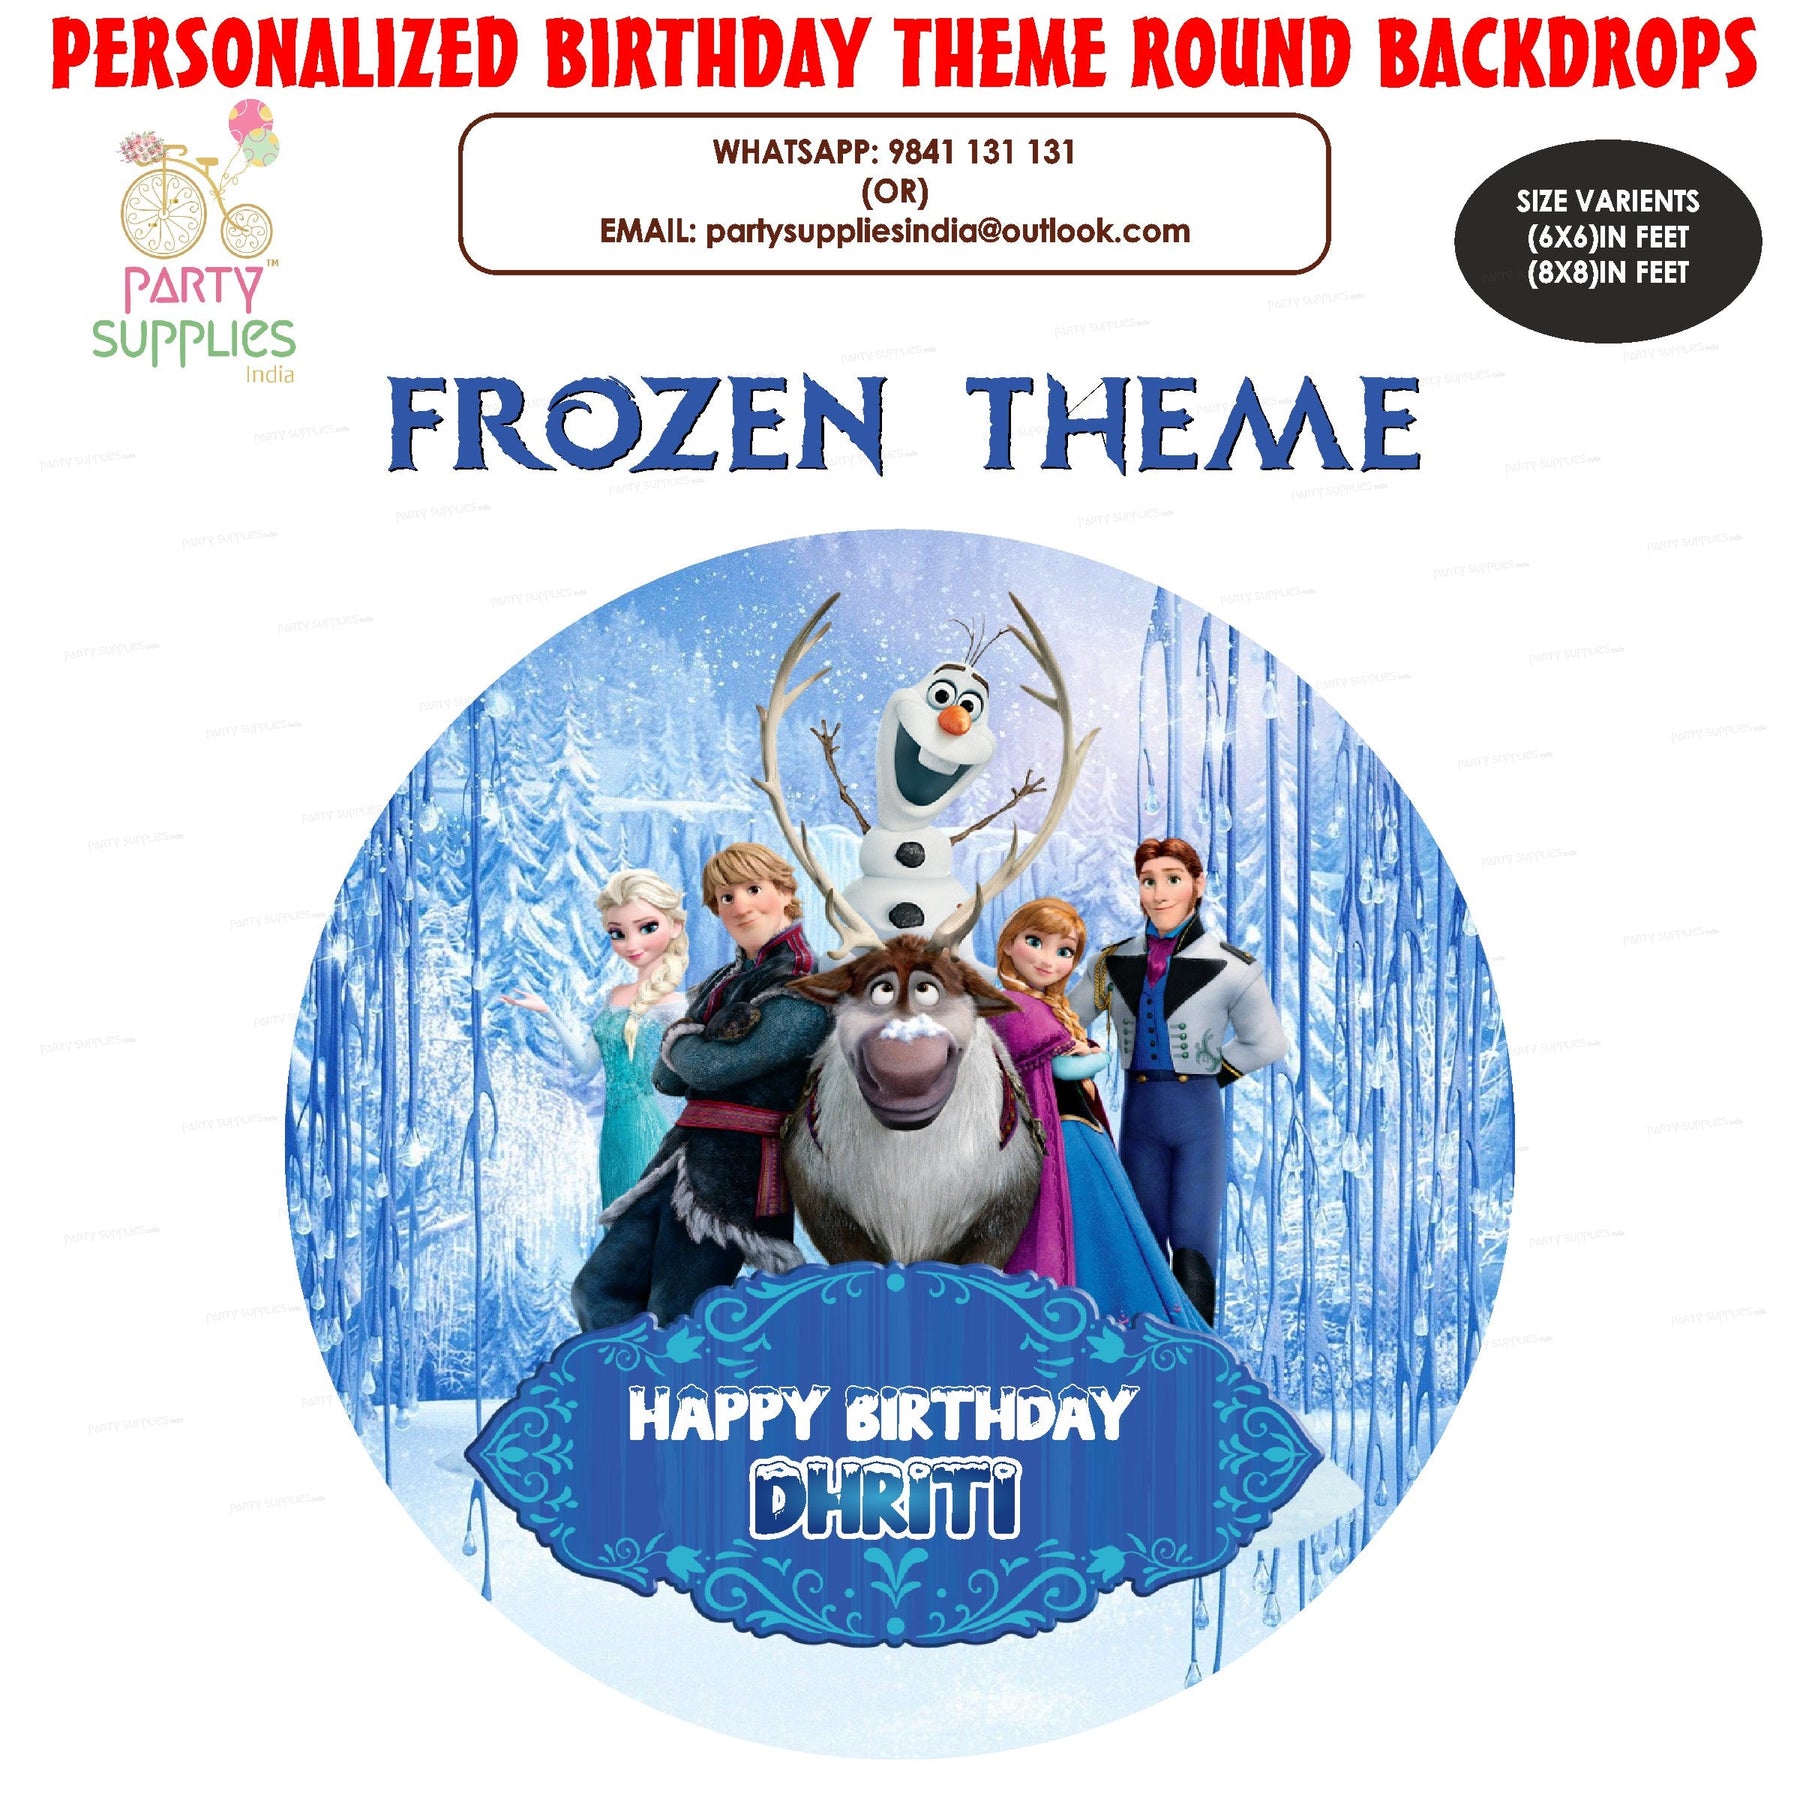 PSI Frozen Theme Customized Round Backdrop